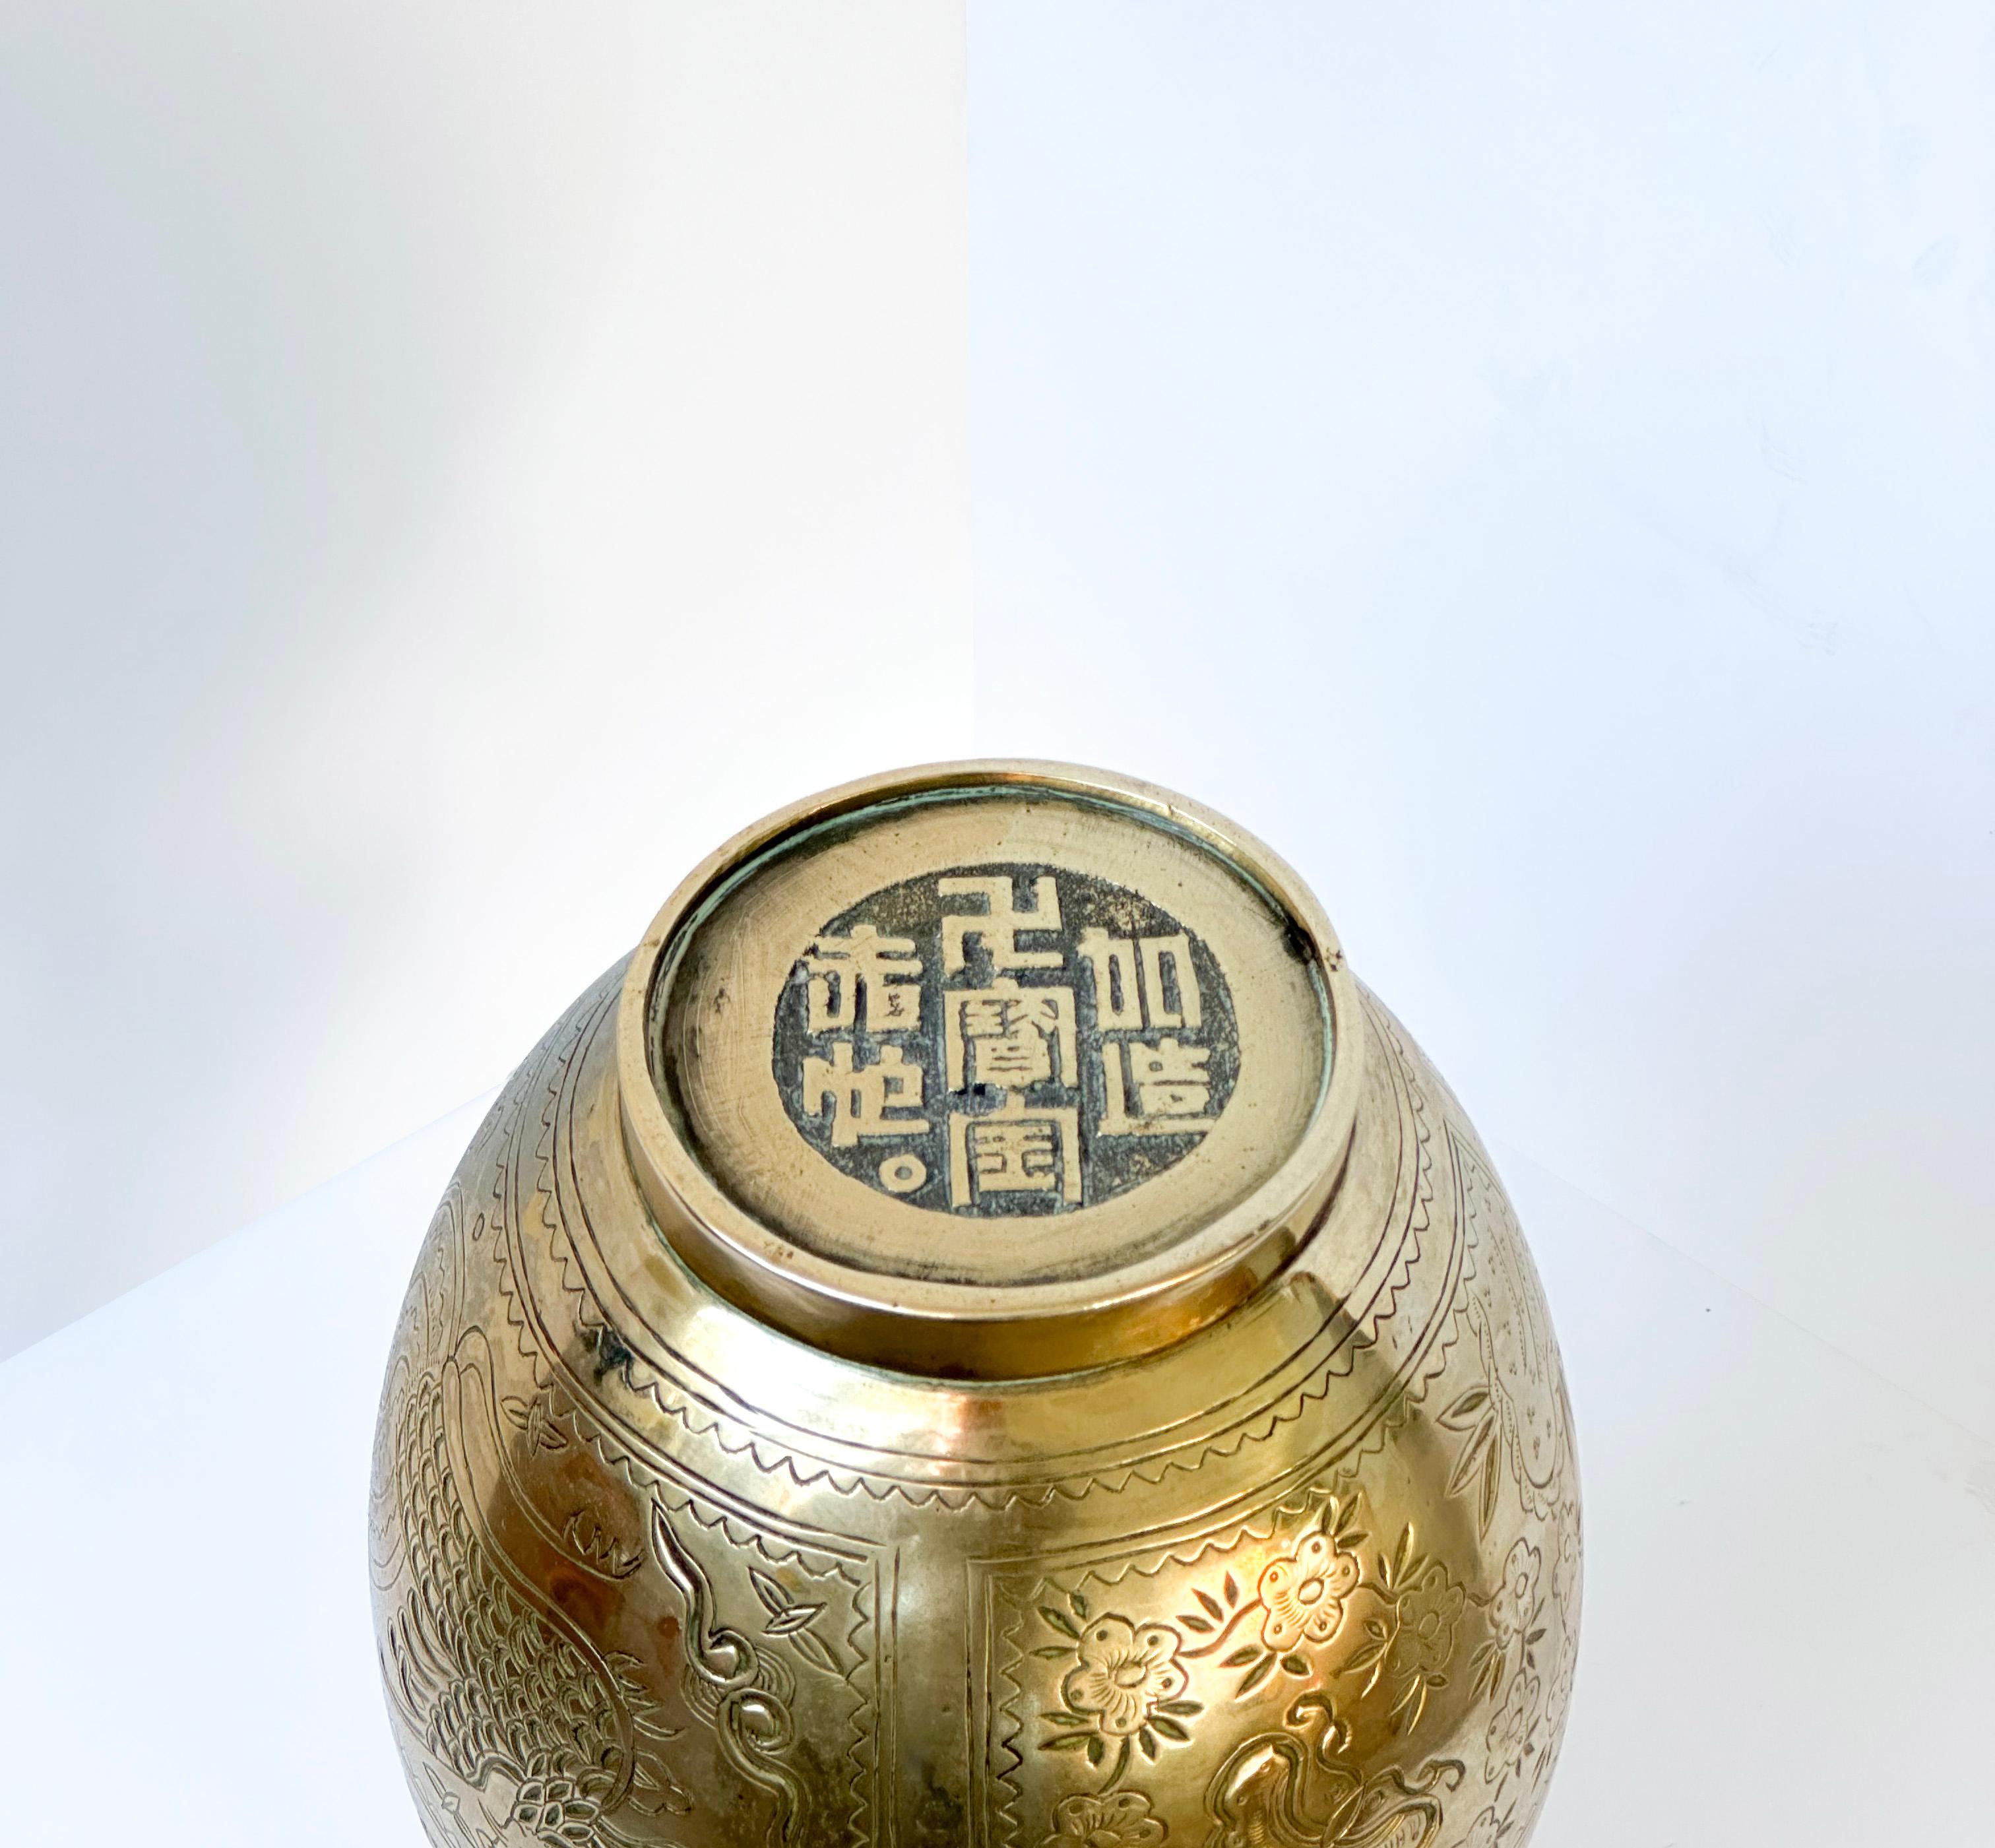  Chinesische Vase aus den 1970er Jahren: ein beeindruckendes Beispiel für Handwerkskunst und Geschick. Die Vase wurde in Bronze gegossen und zeichnet sich durch ihren fein gearbeiteten, skulpturalen Drachenhals aus - ein Emblem für Kraft und Anmut.